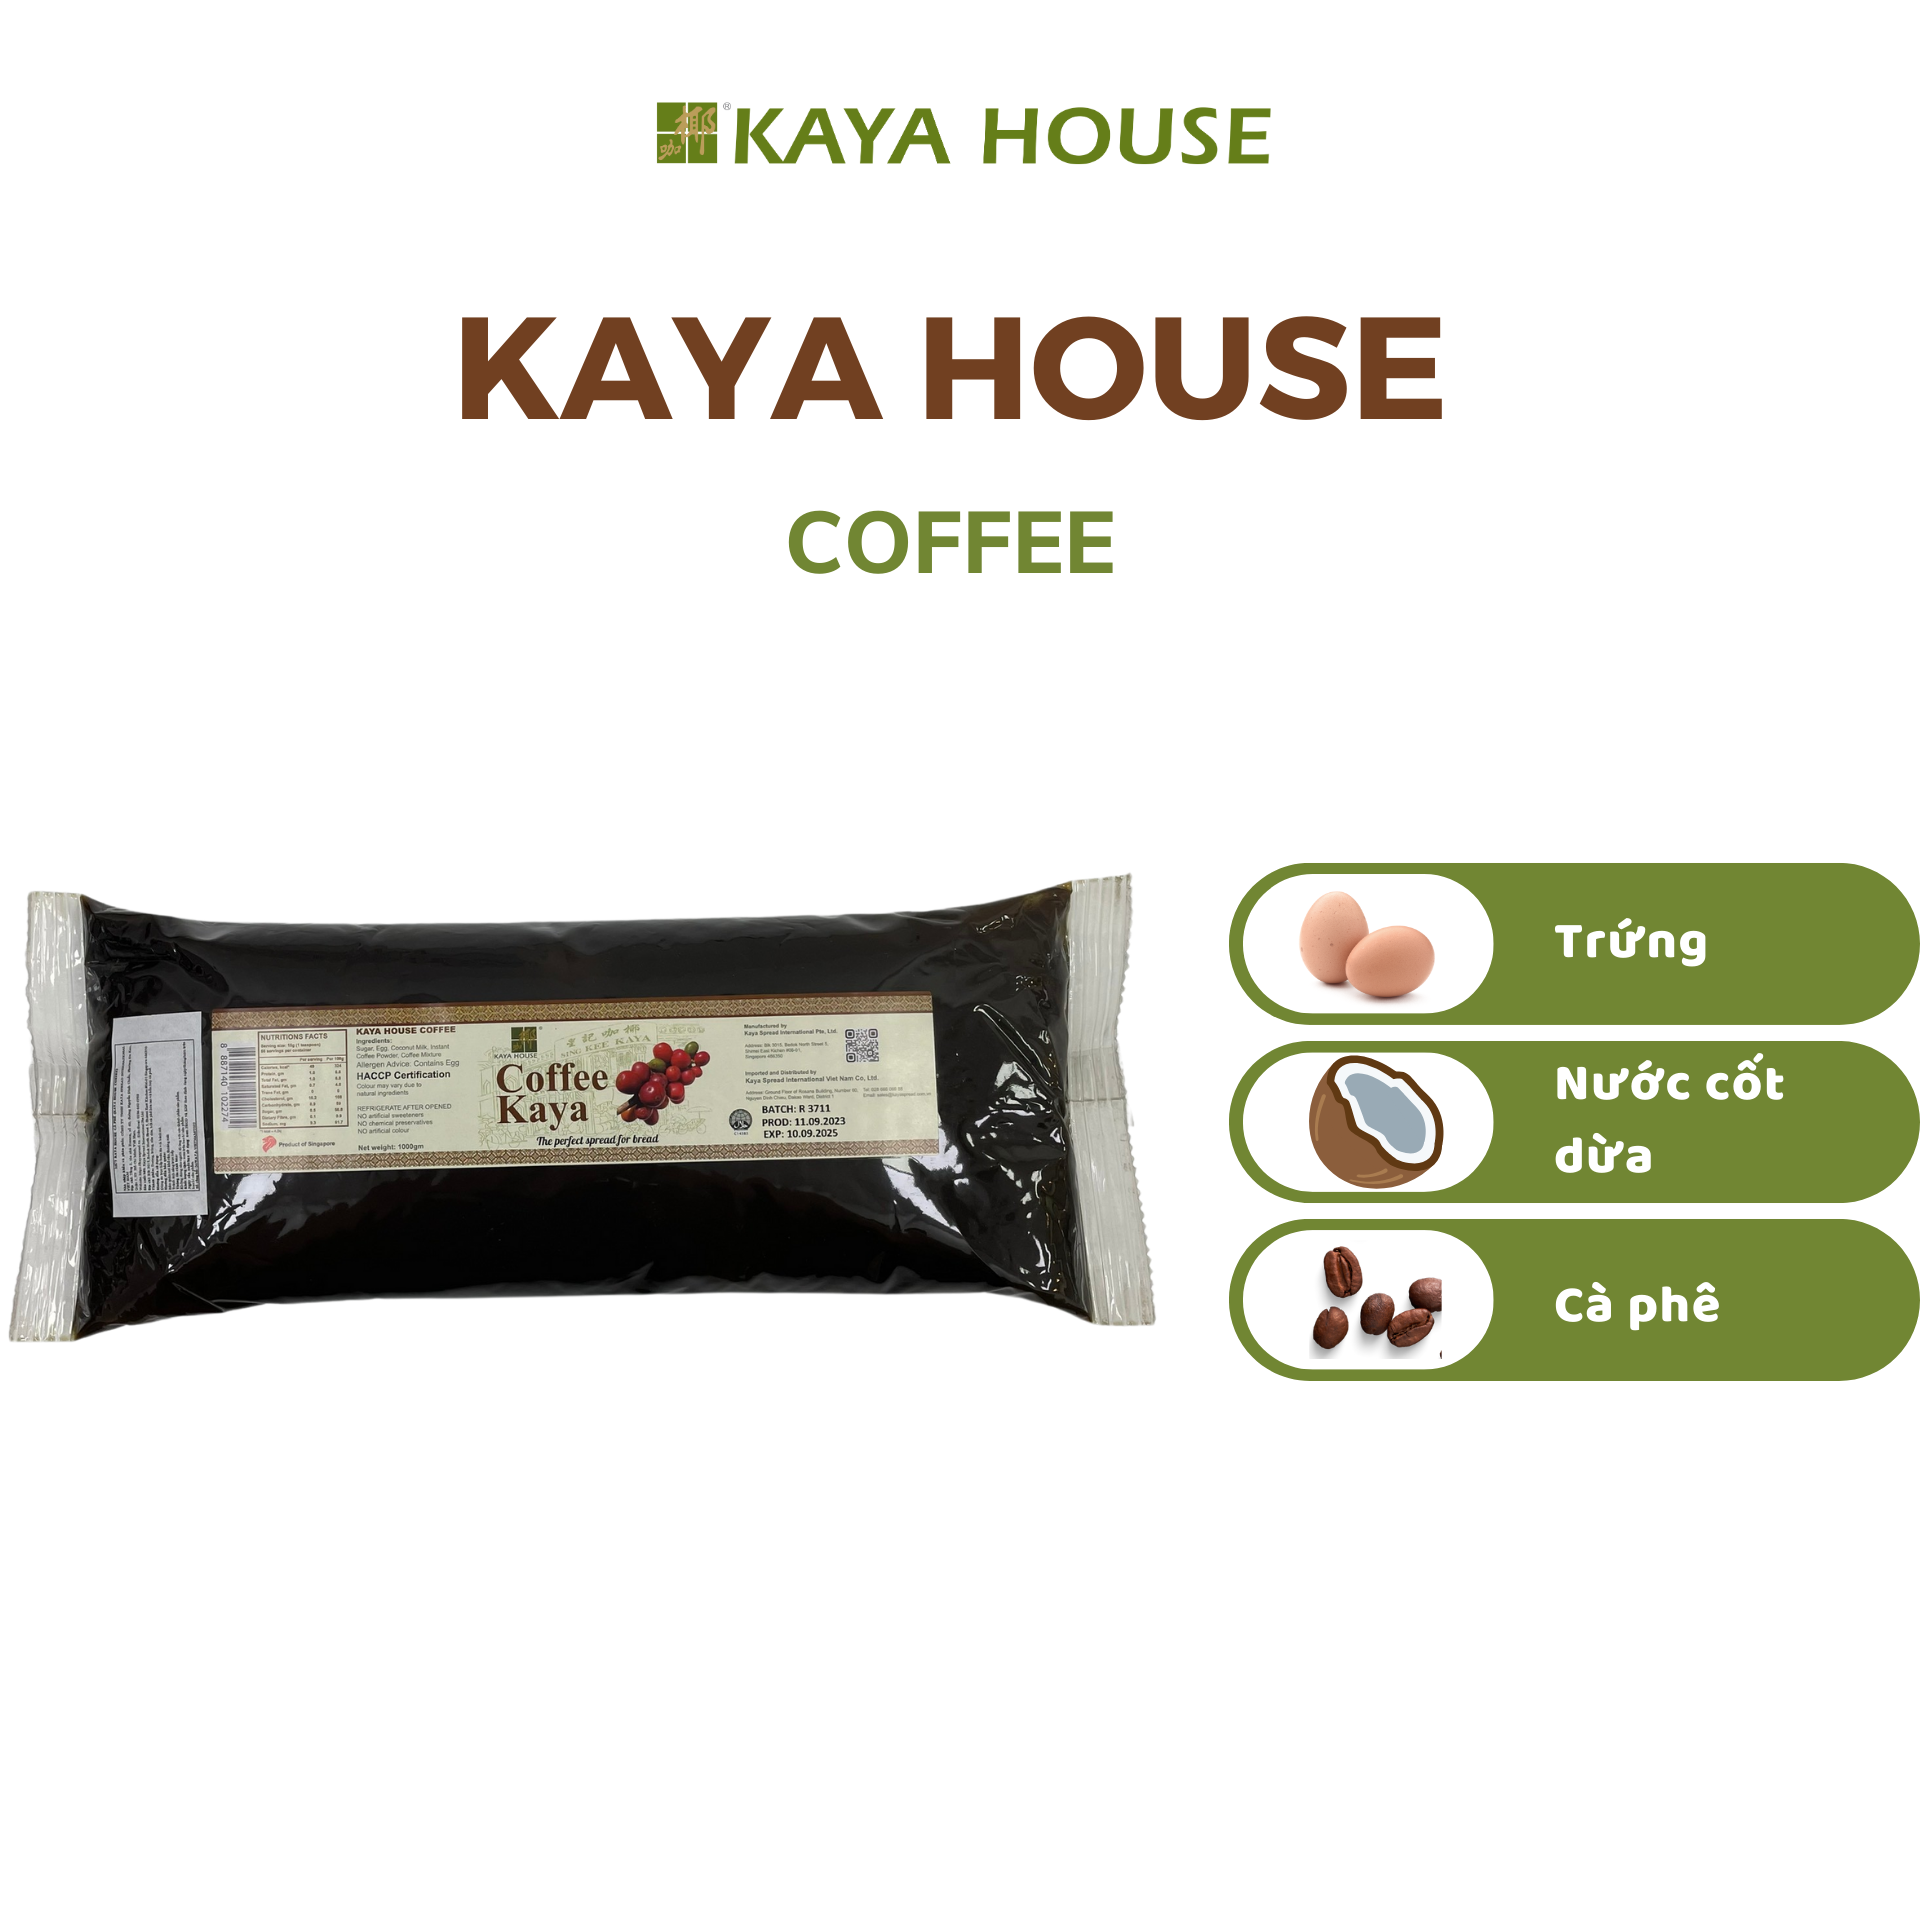 Mứt Kaya Singapore Coffee túi 1000G - Kaya House - Ăn kèm với Sandwich, làm nguyên liệu nấu ăn